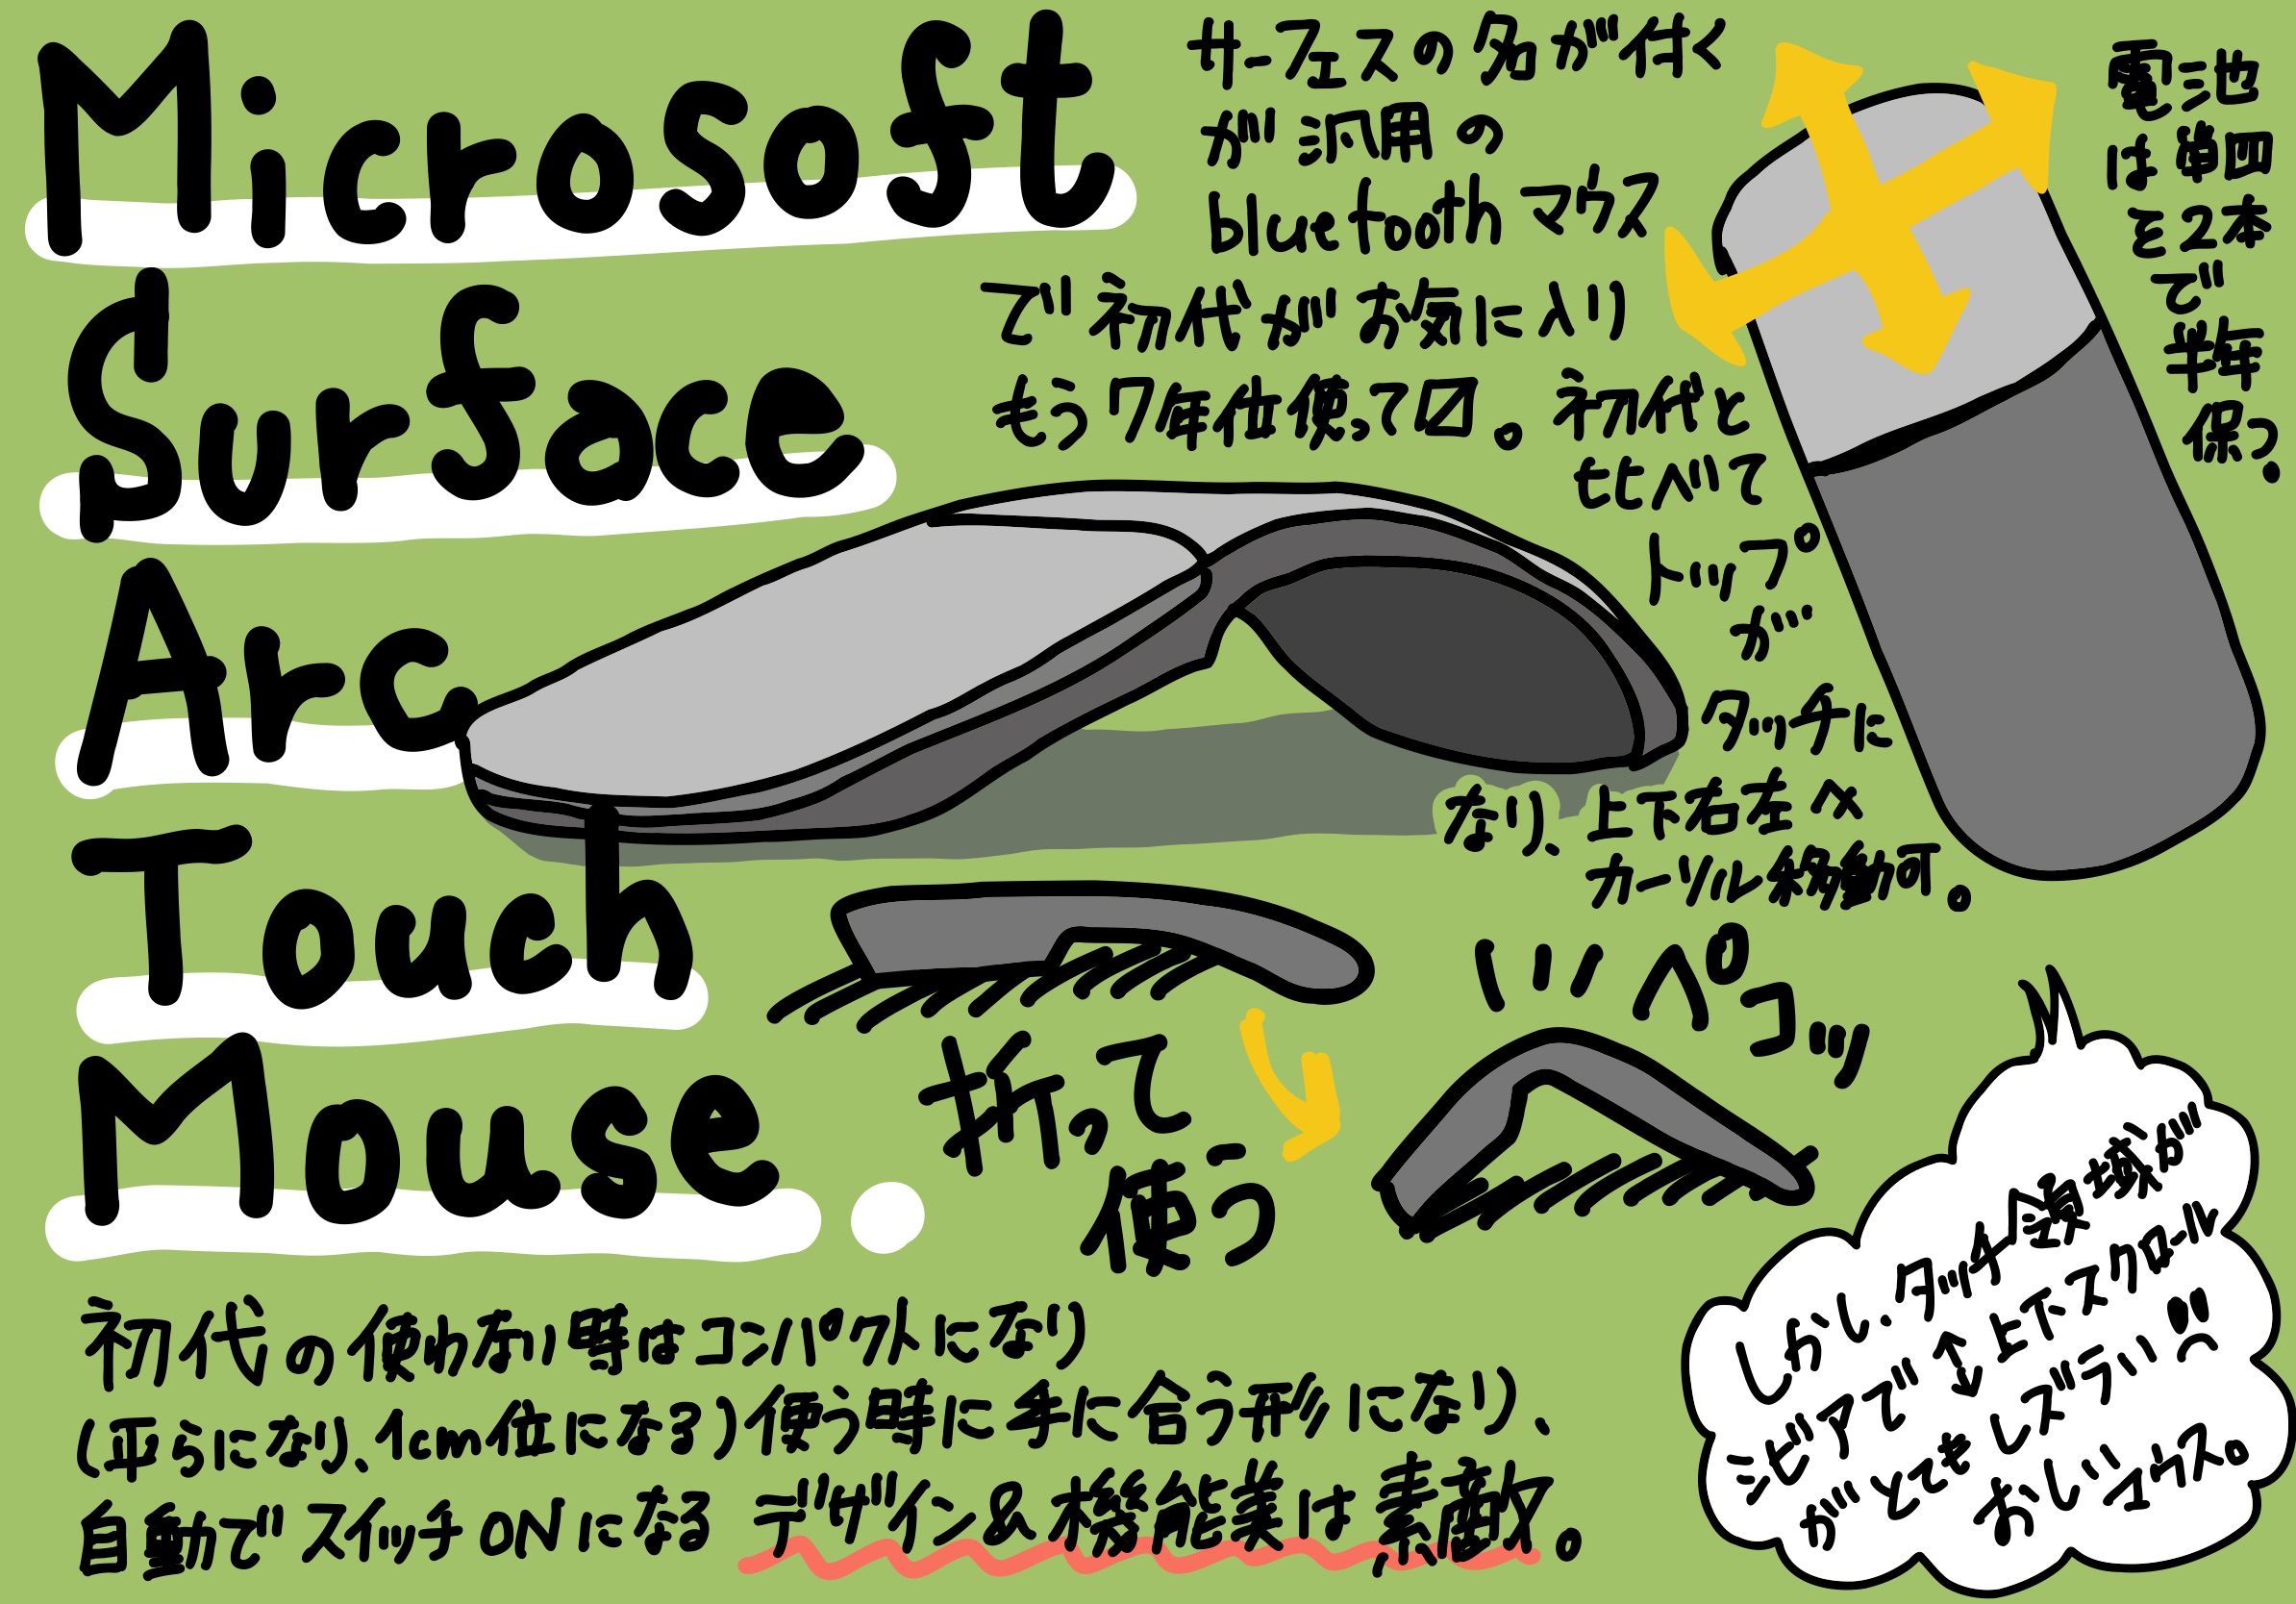 Microsoft Surface Arc touch Mouse をまた試したくて買ってしまってまた手放す 再レビューの巻